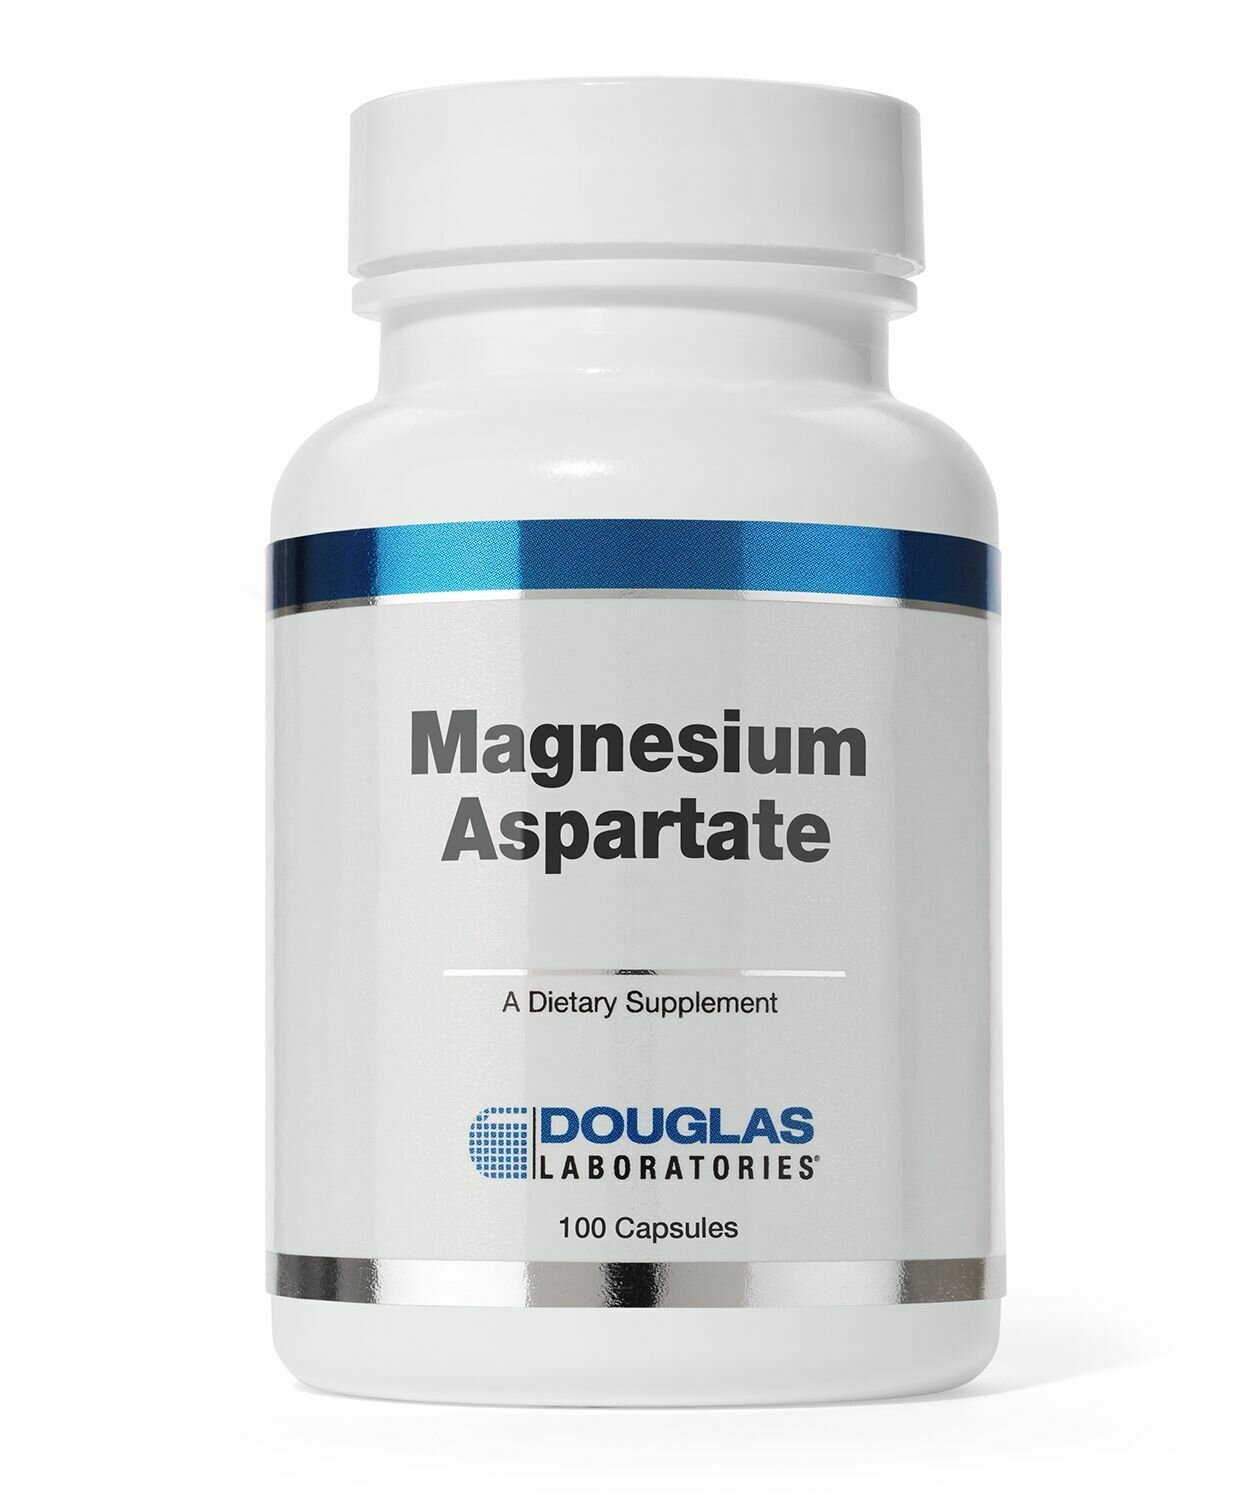 Magnesium Aspartate